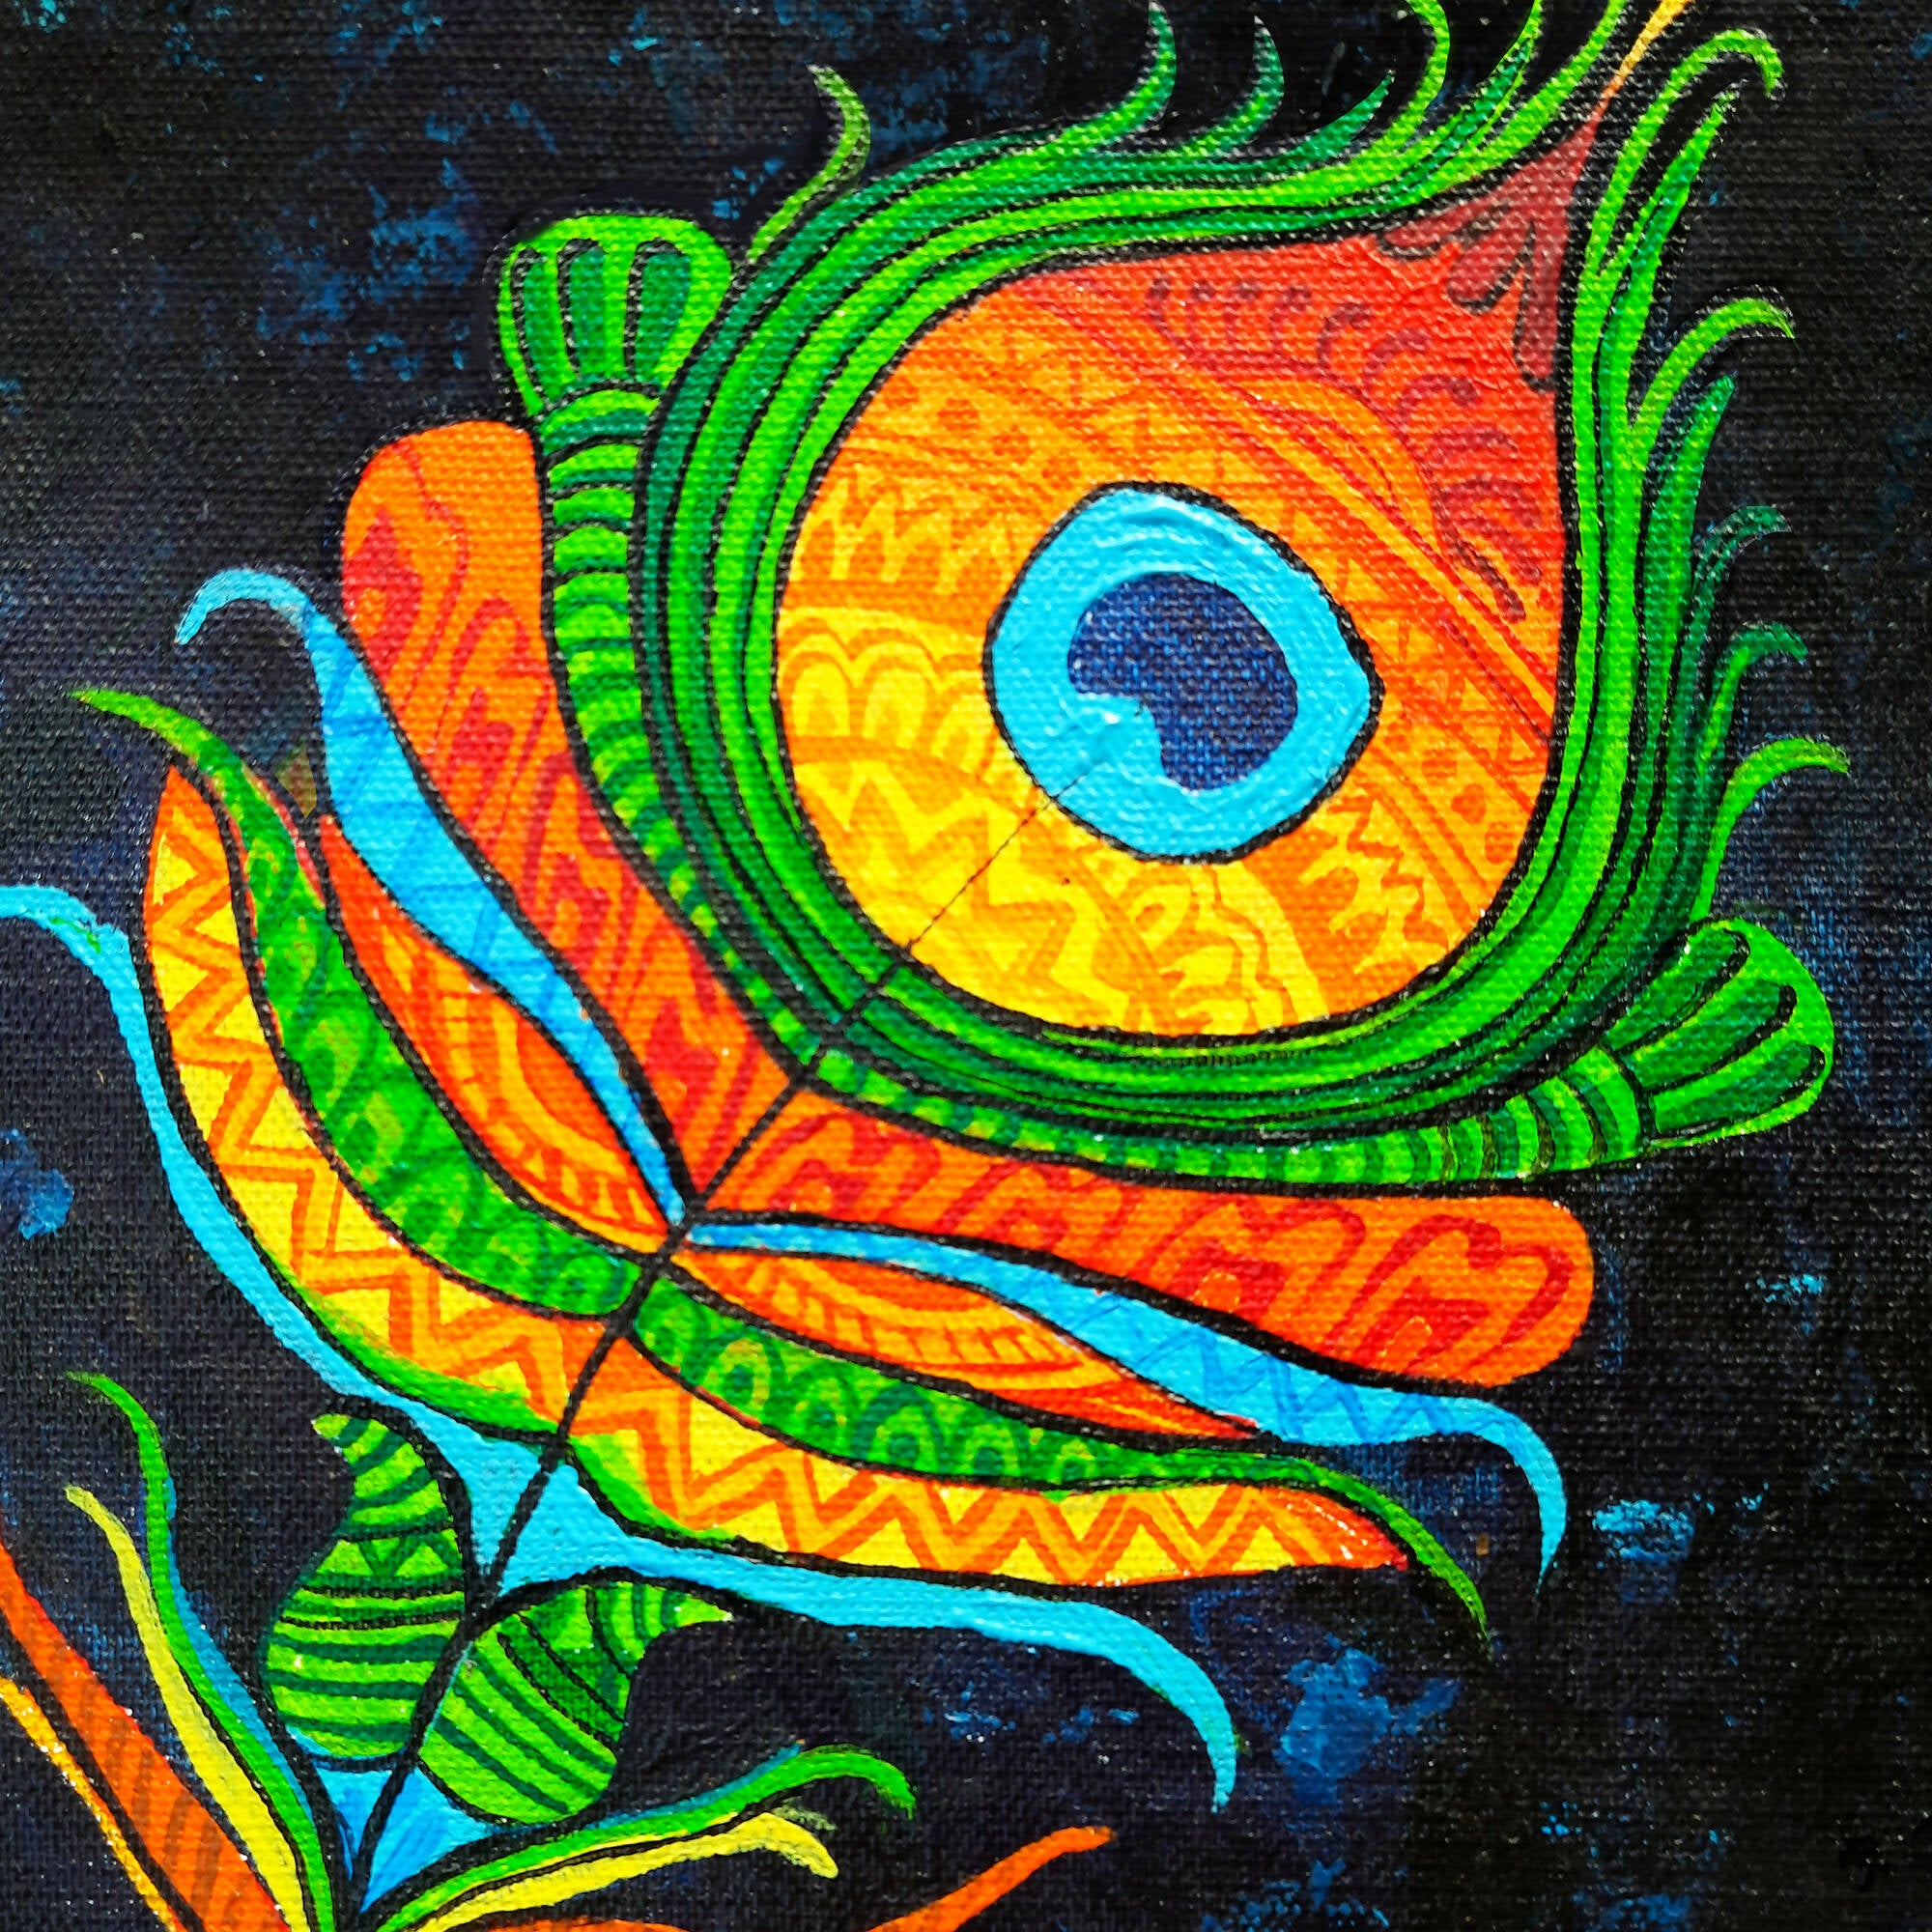 Mandala art/painting on canvas